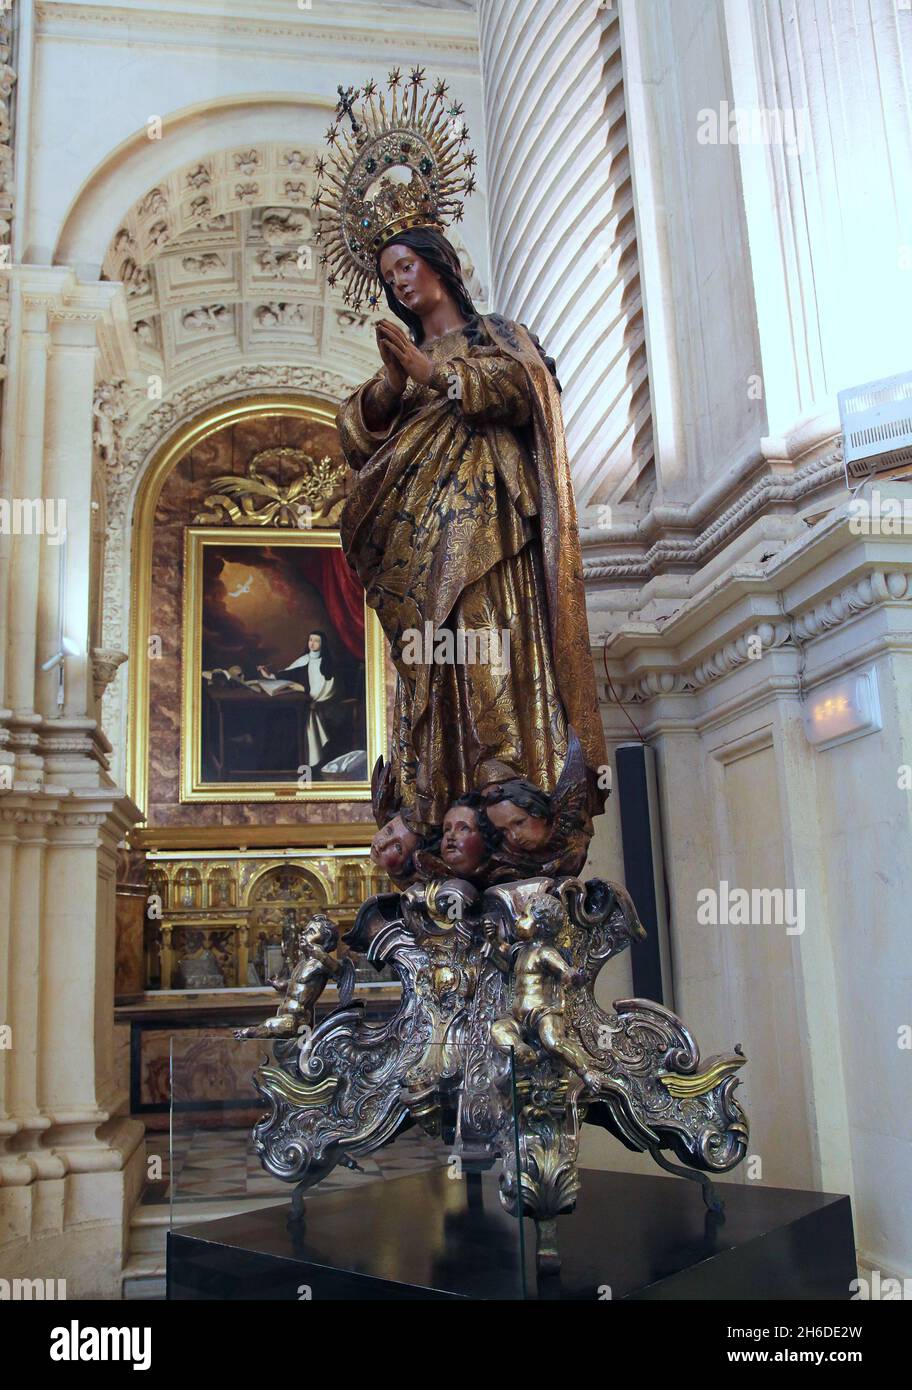 Immaculée conception de la sacristie principale de la cathédrale de Séville (1658) par le sculpteur Alonso Martinez.(1612 - 1668 ) Alonso était un sculpteur baroque qui travaillait principalement dans les villes de Cádiz et Séville. Banque D'Images